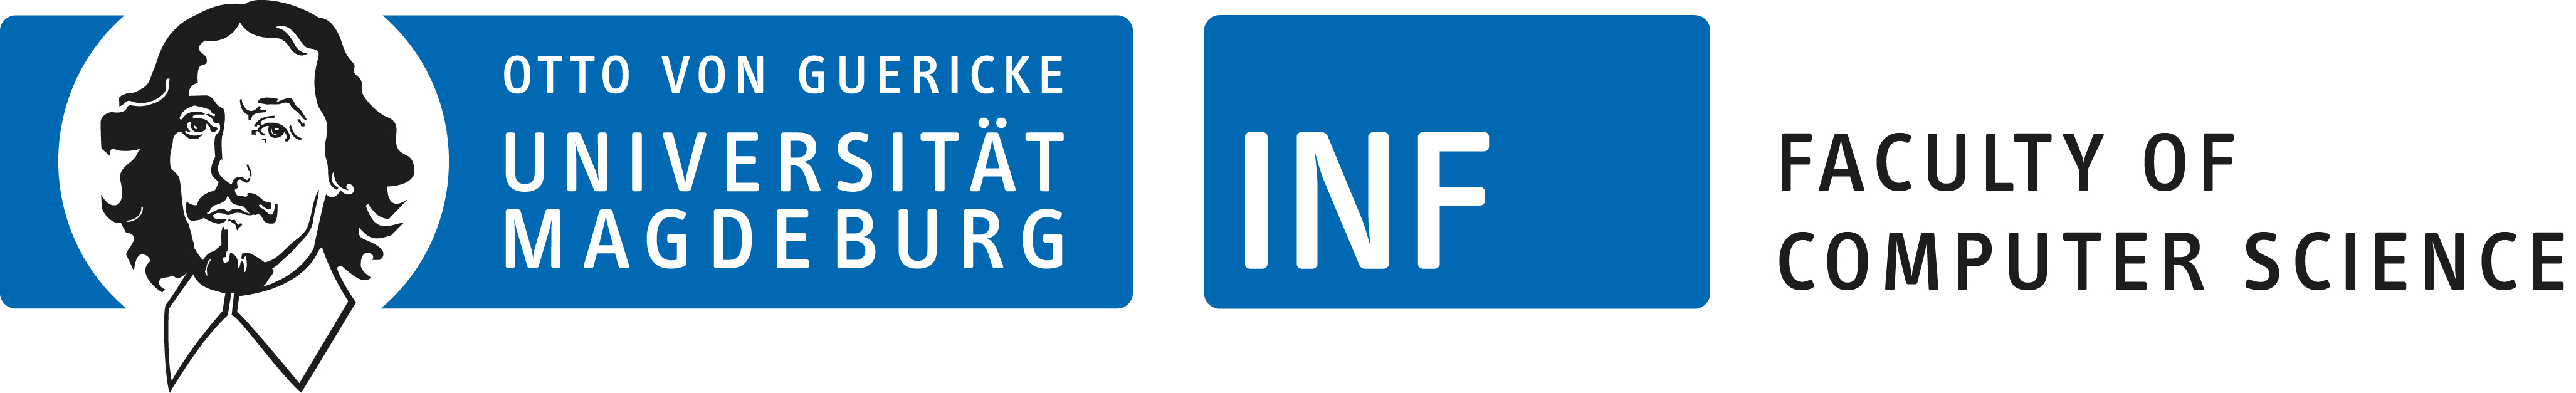 FIN-Logo